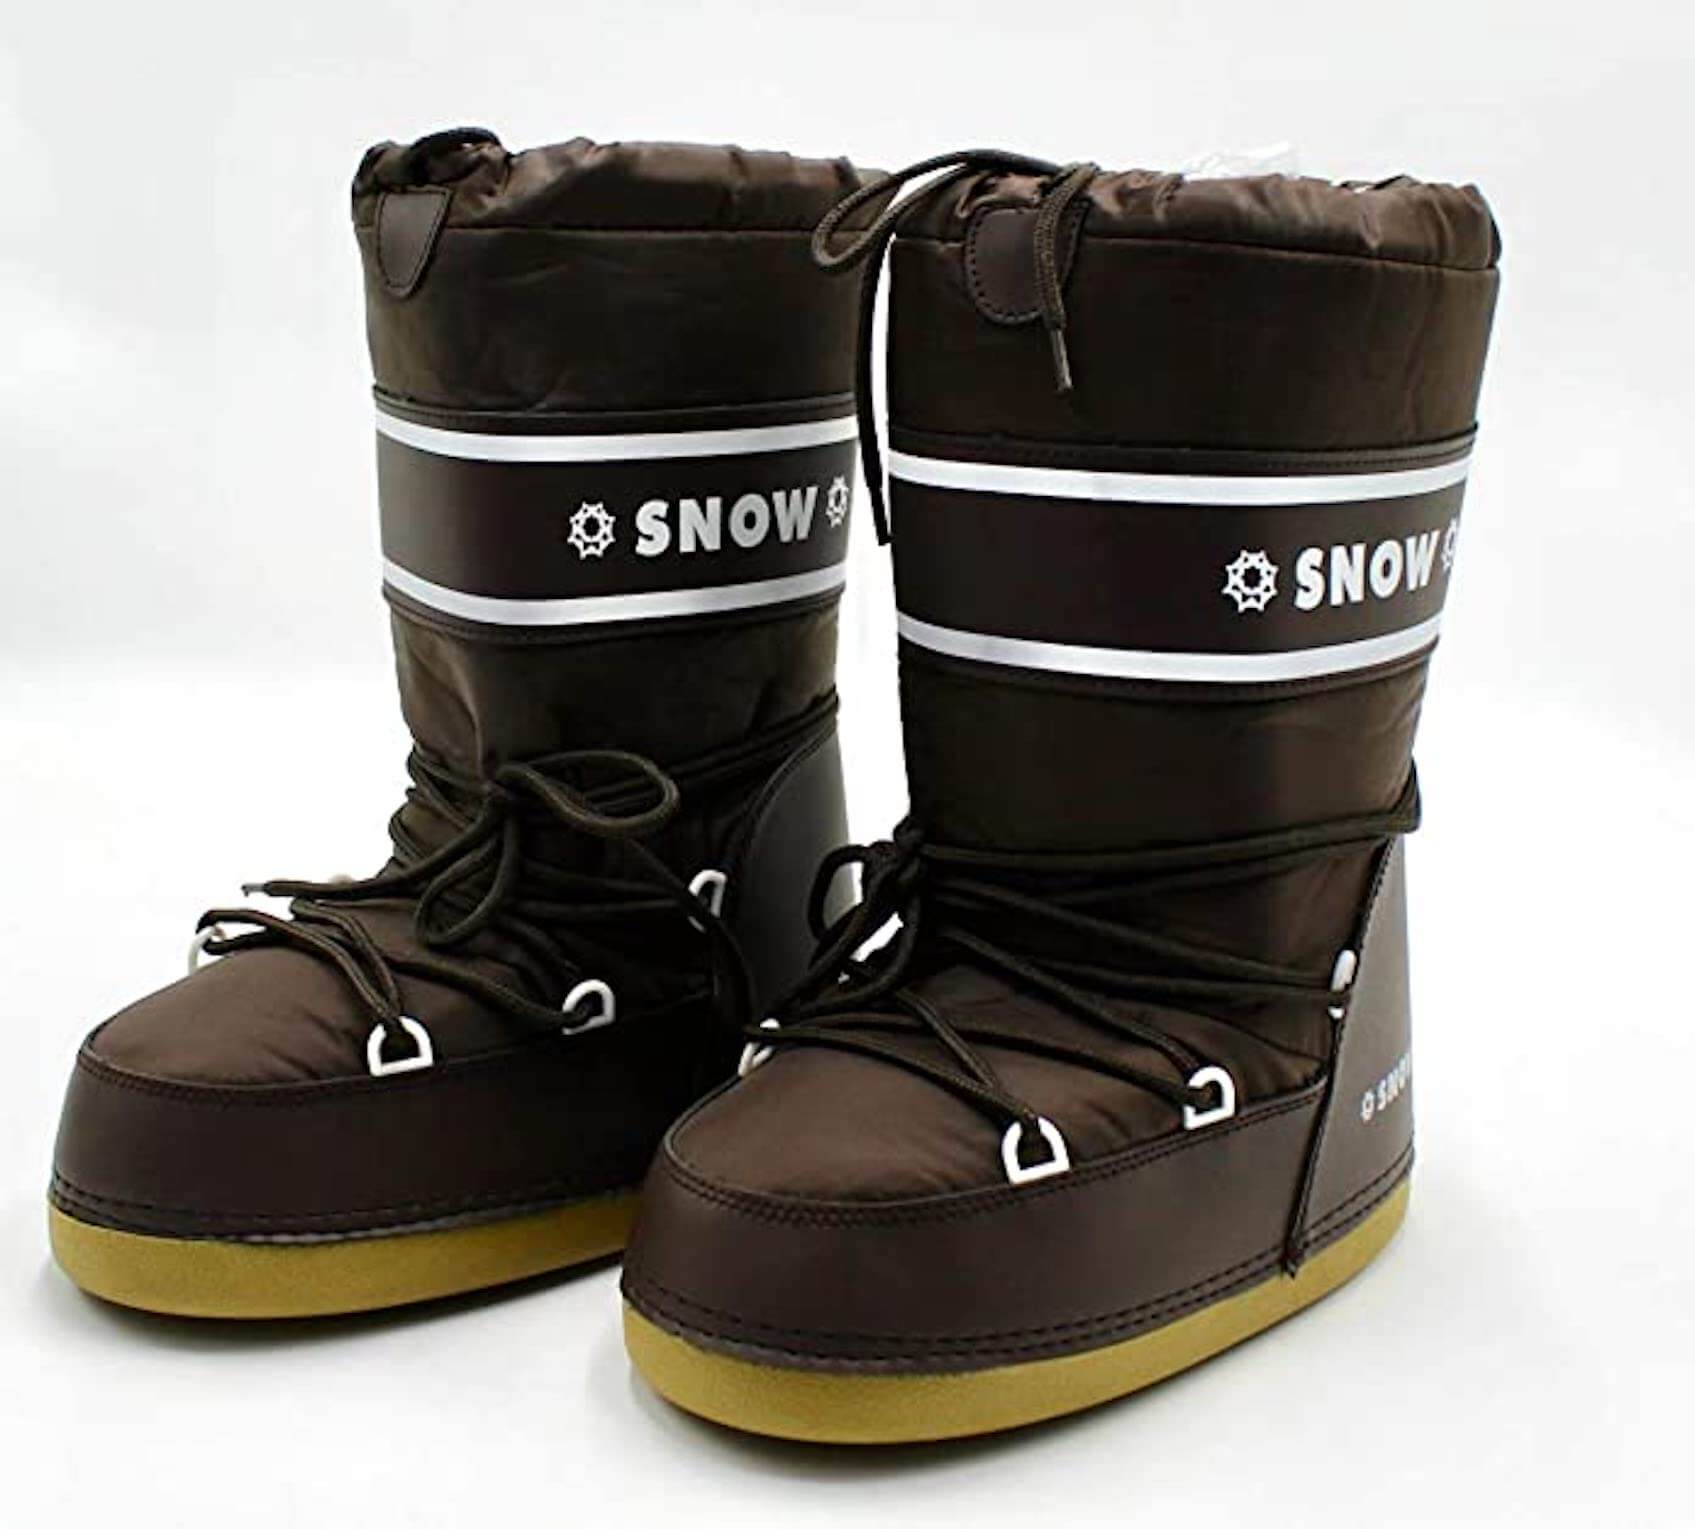 SnowBoot Braun Schneeschuhe Größe 35-38. Snow-Boots Winterstiefel für kalte Tage Robuste Sohle